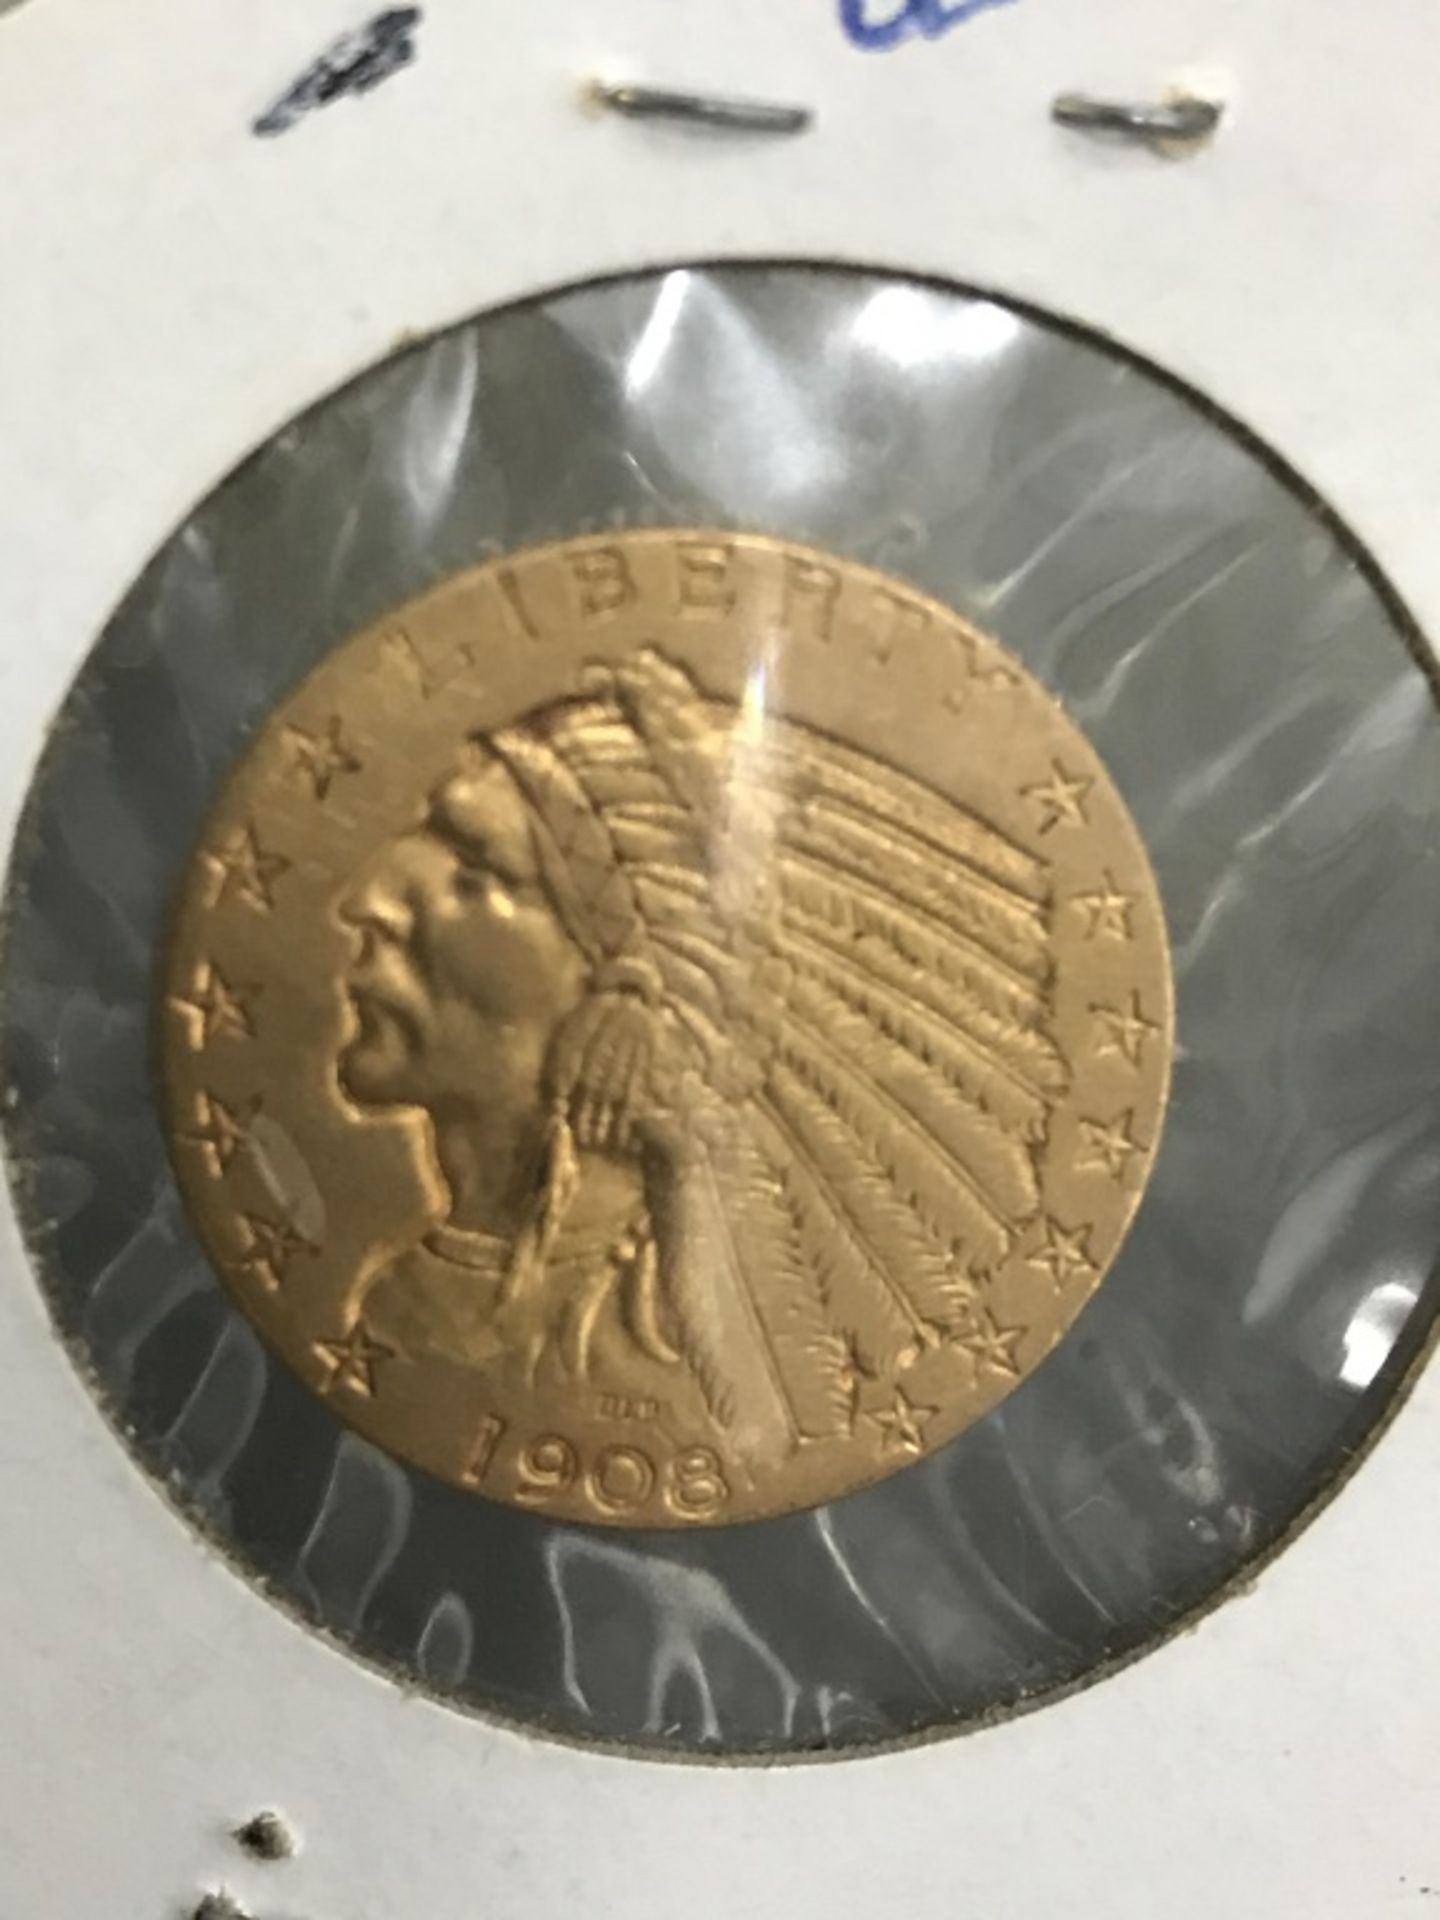 $5 US Gold Indian 1908 AV 50 - Image 2 of 9